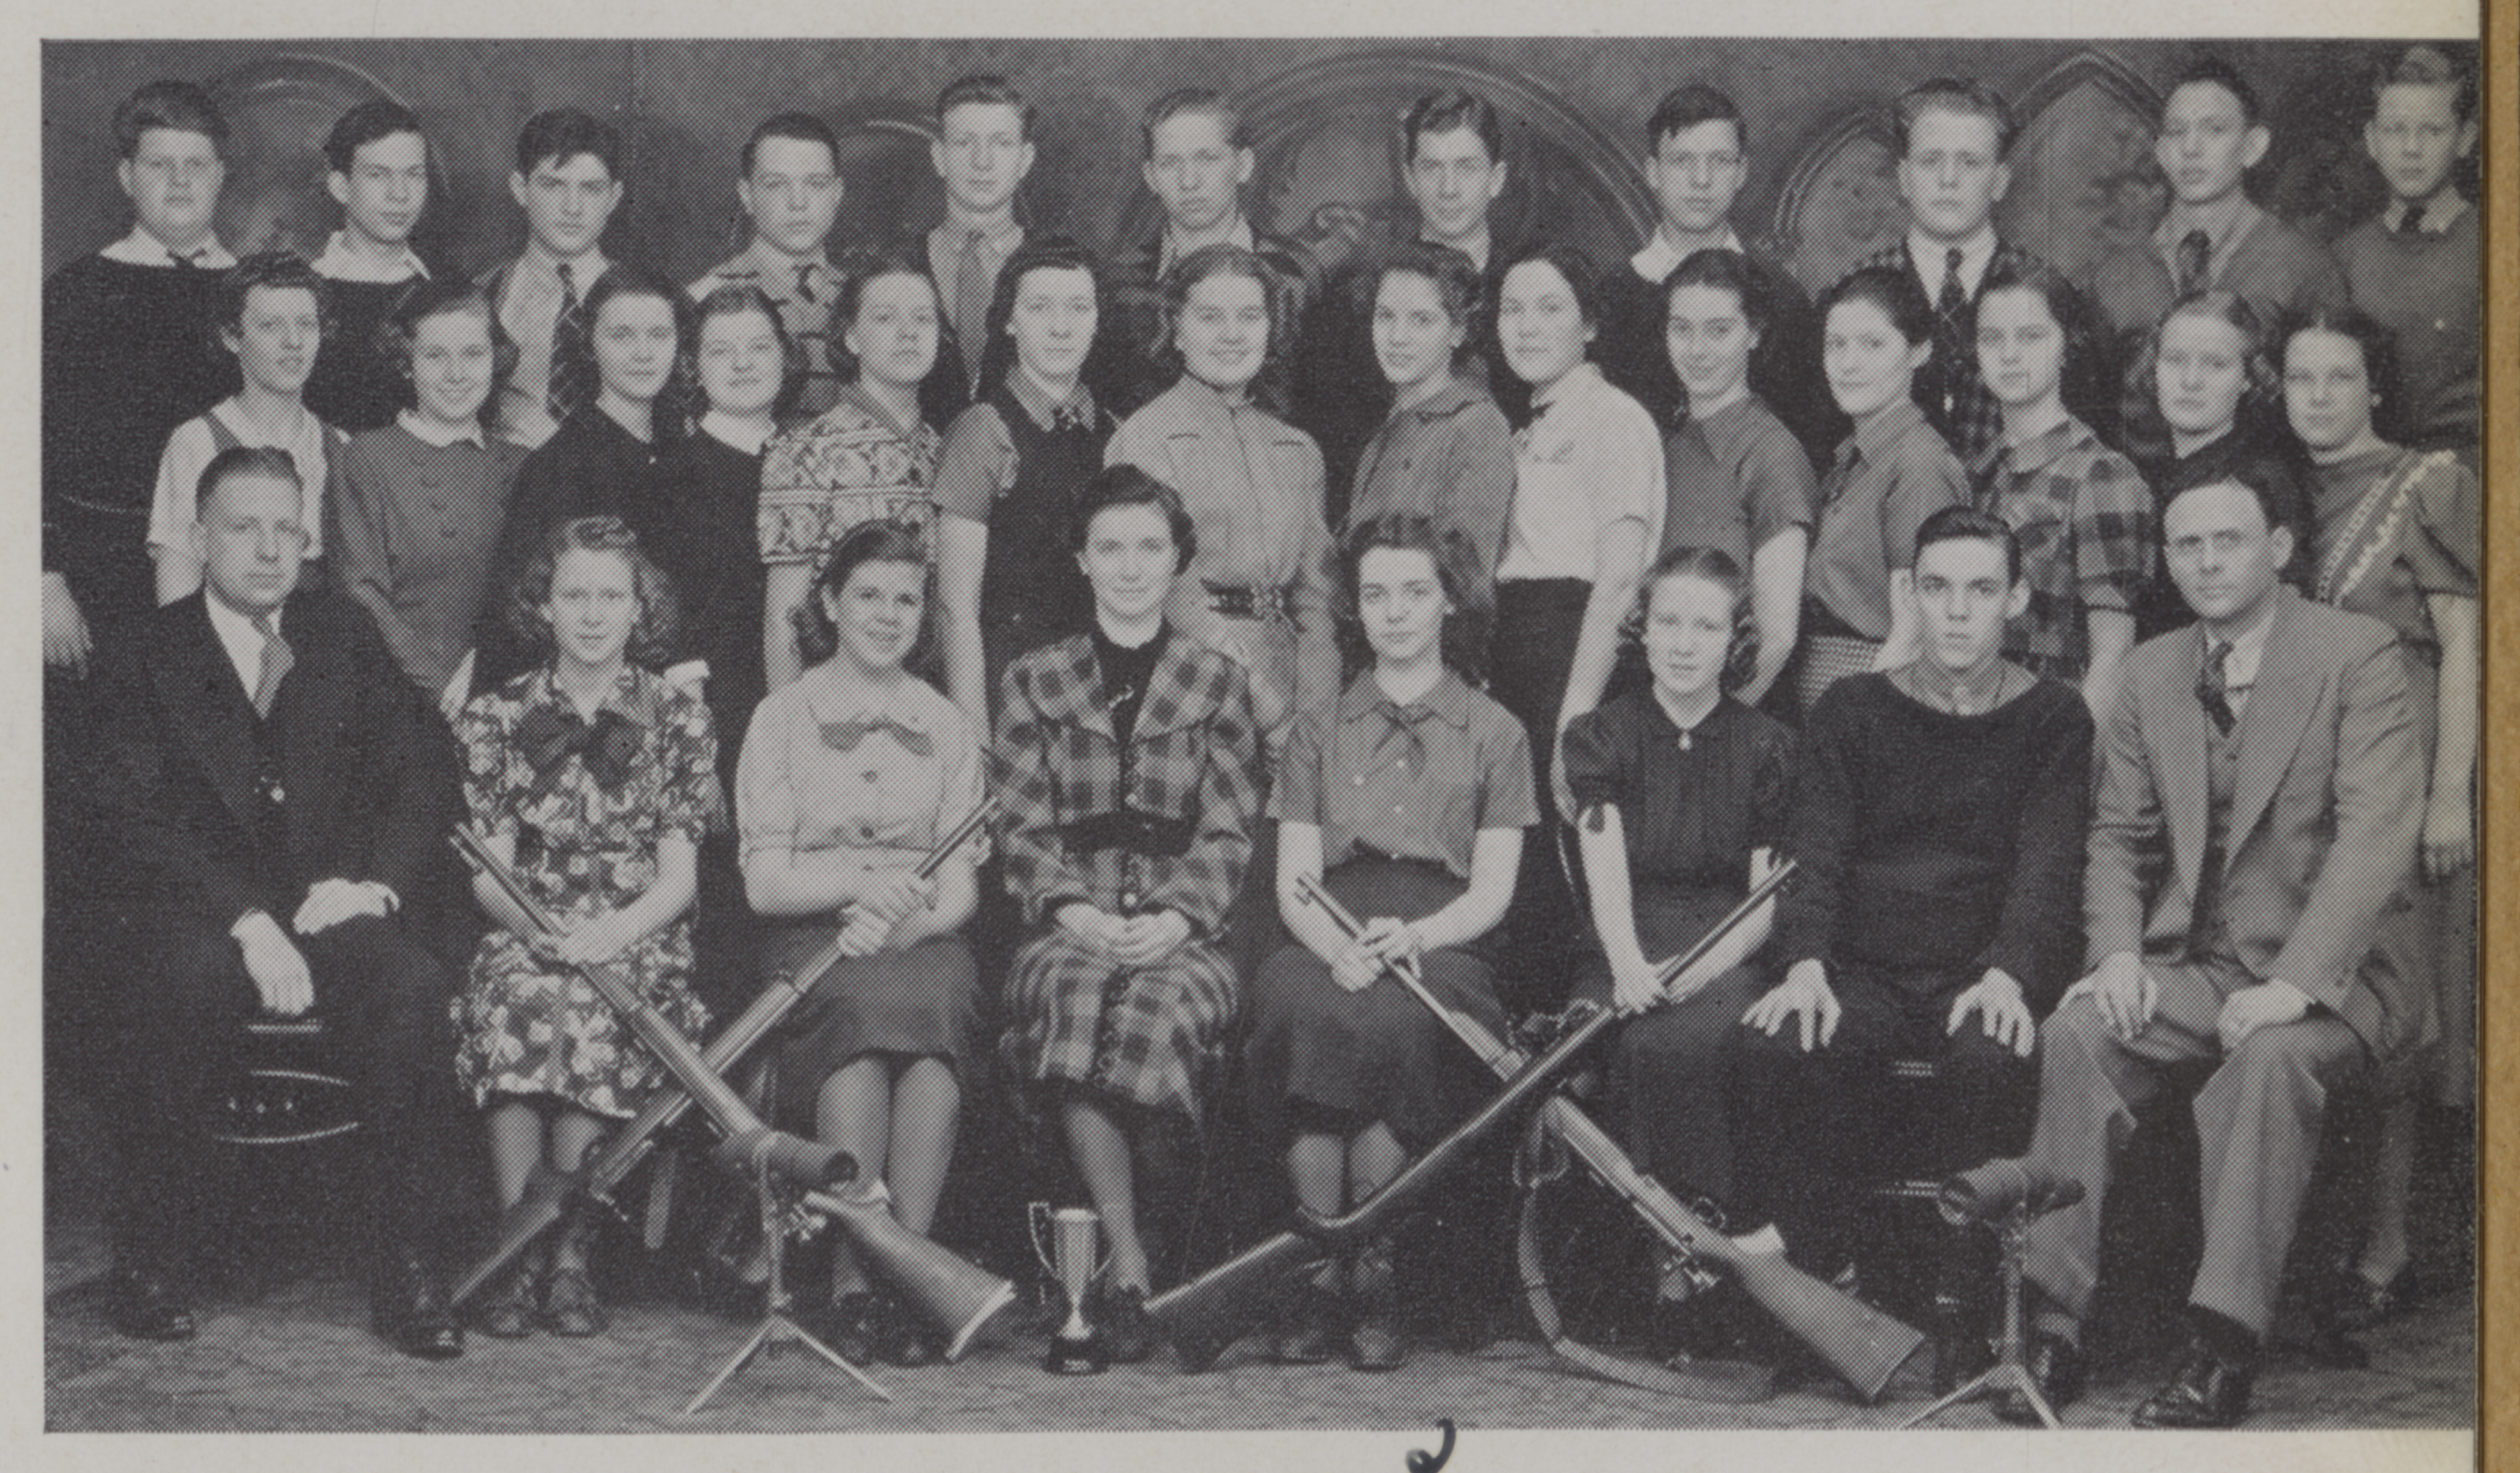 Rifle team photograph at Munhall High School in 1938.